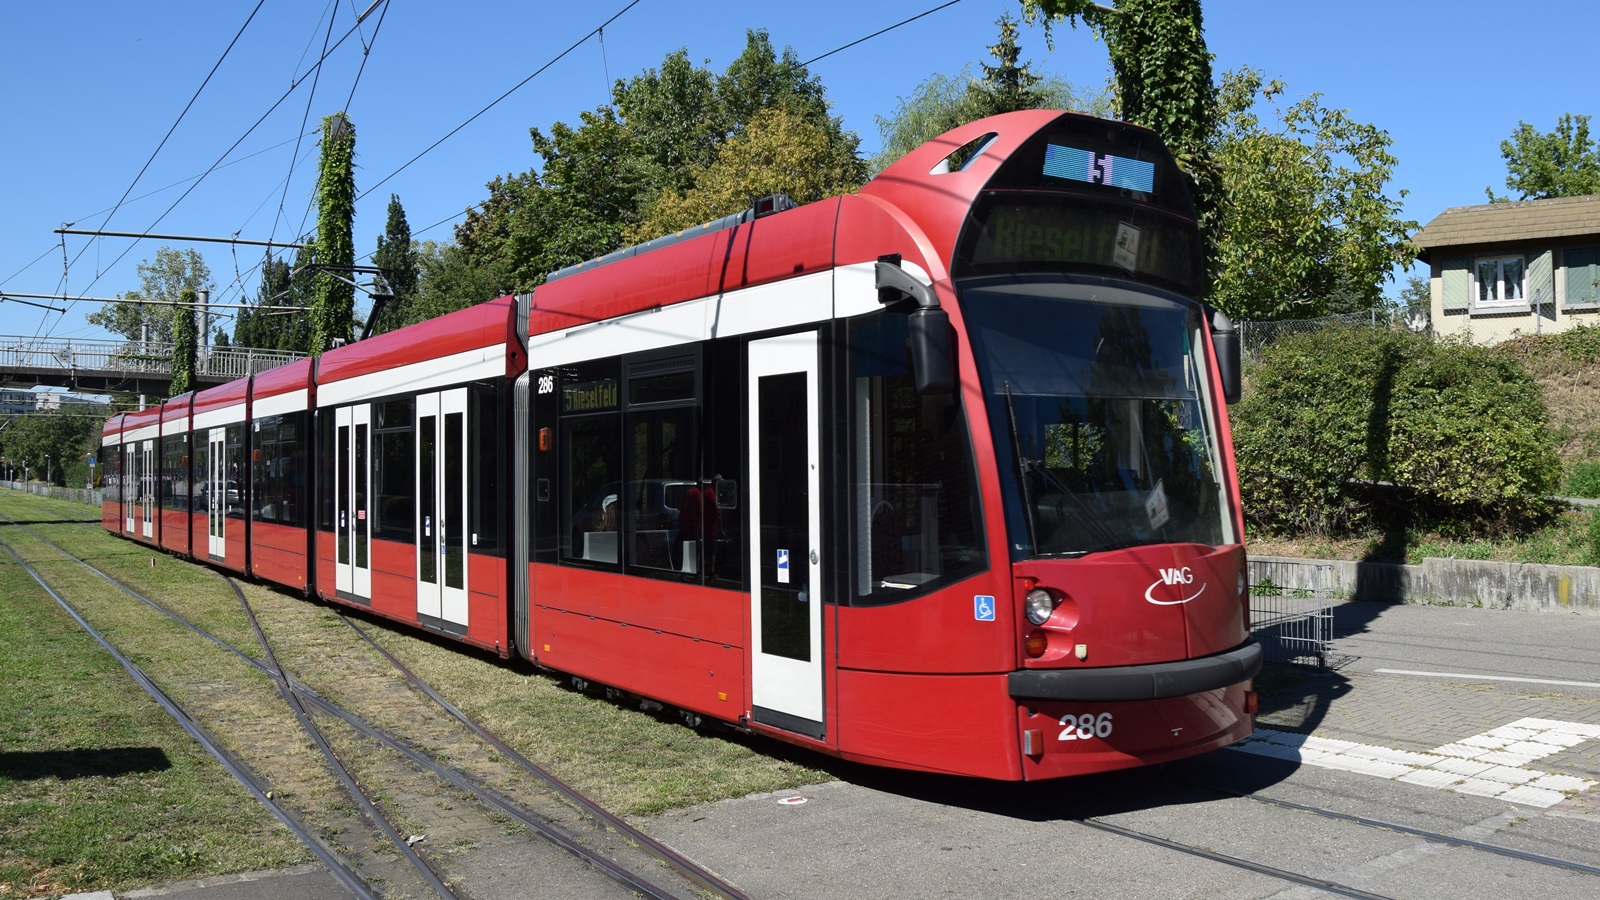 Am 09.09.2020 habe ich diese Straßenbahn mit Hersteller Siemens Nr. 286 in Freiburg im Breisgau aufgenommen.